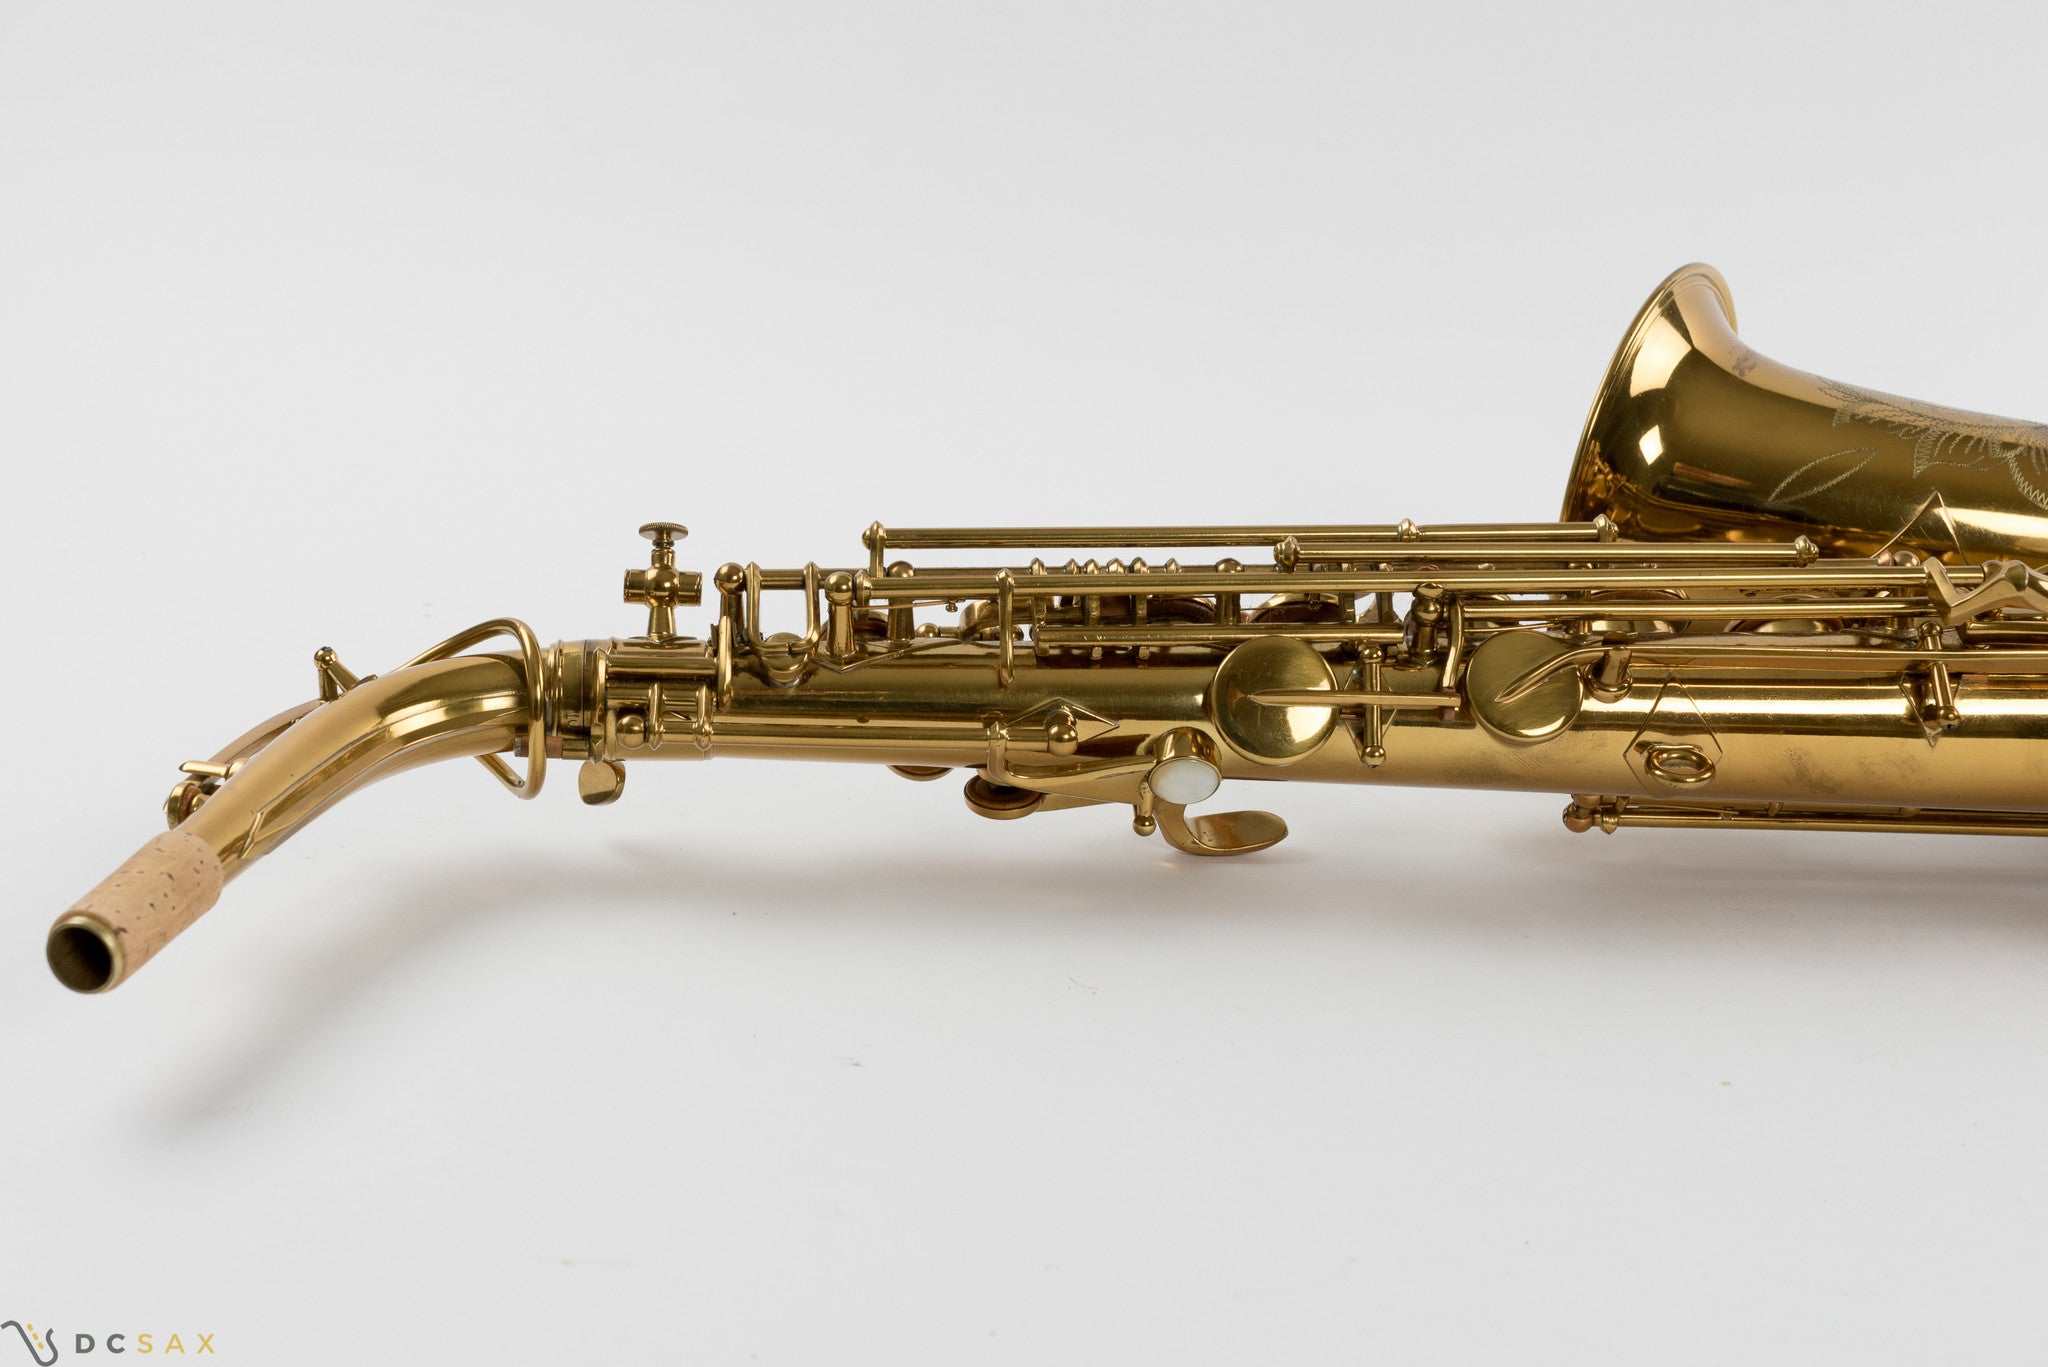 Buescher Aristocrat "Big B" Alto Saxophone, Near Mint